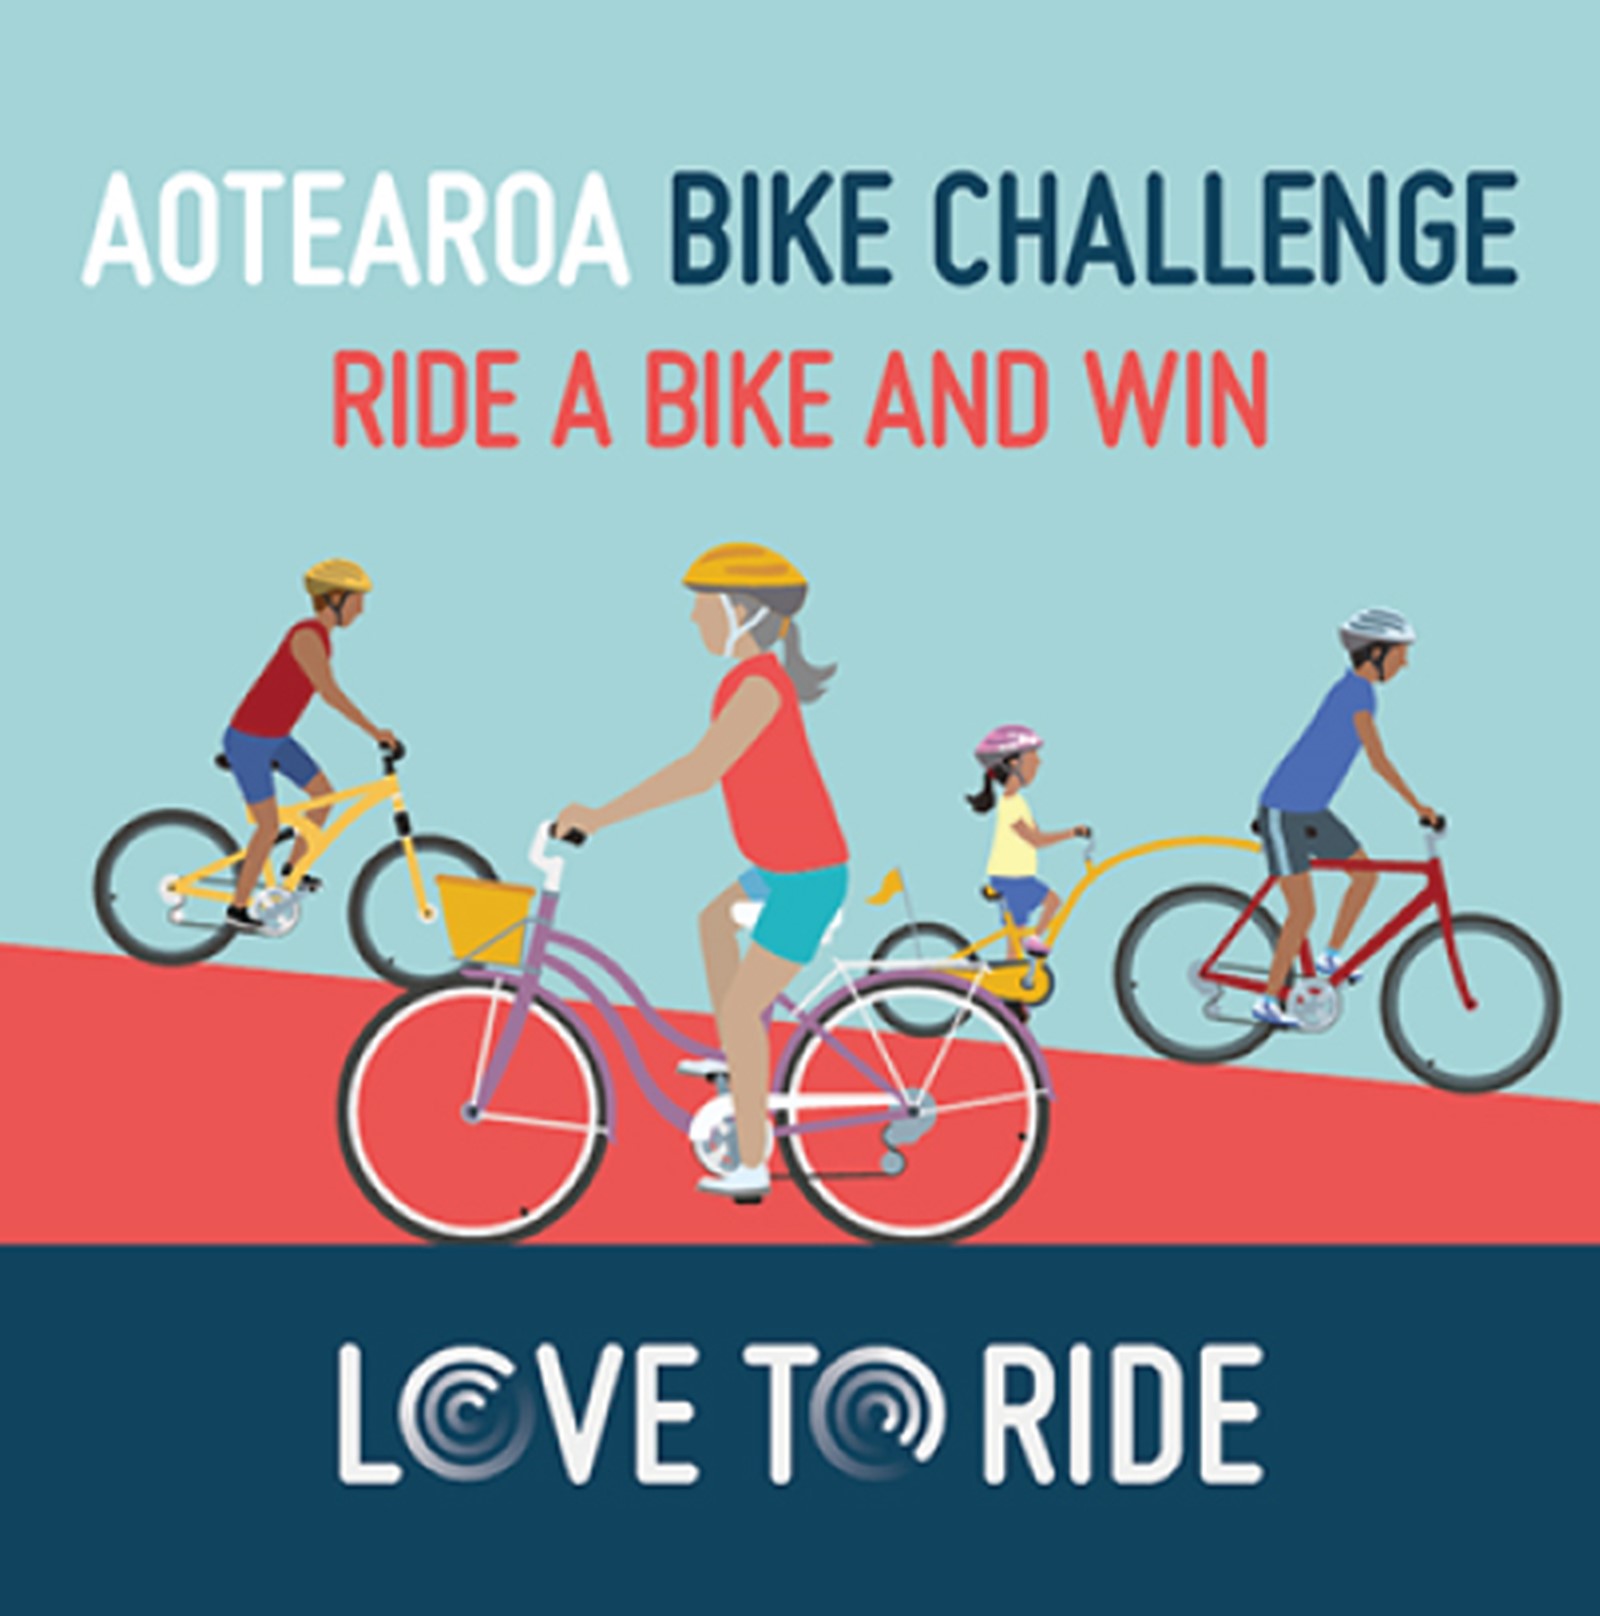 Aotearoa Bike Challenge